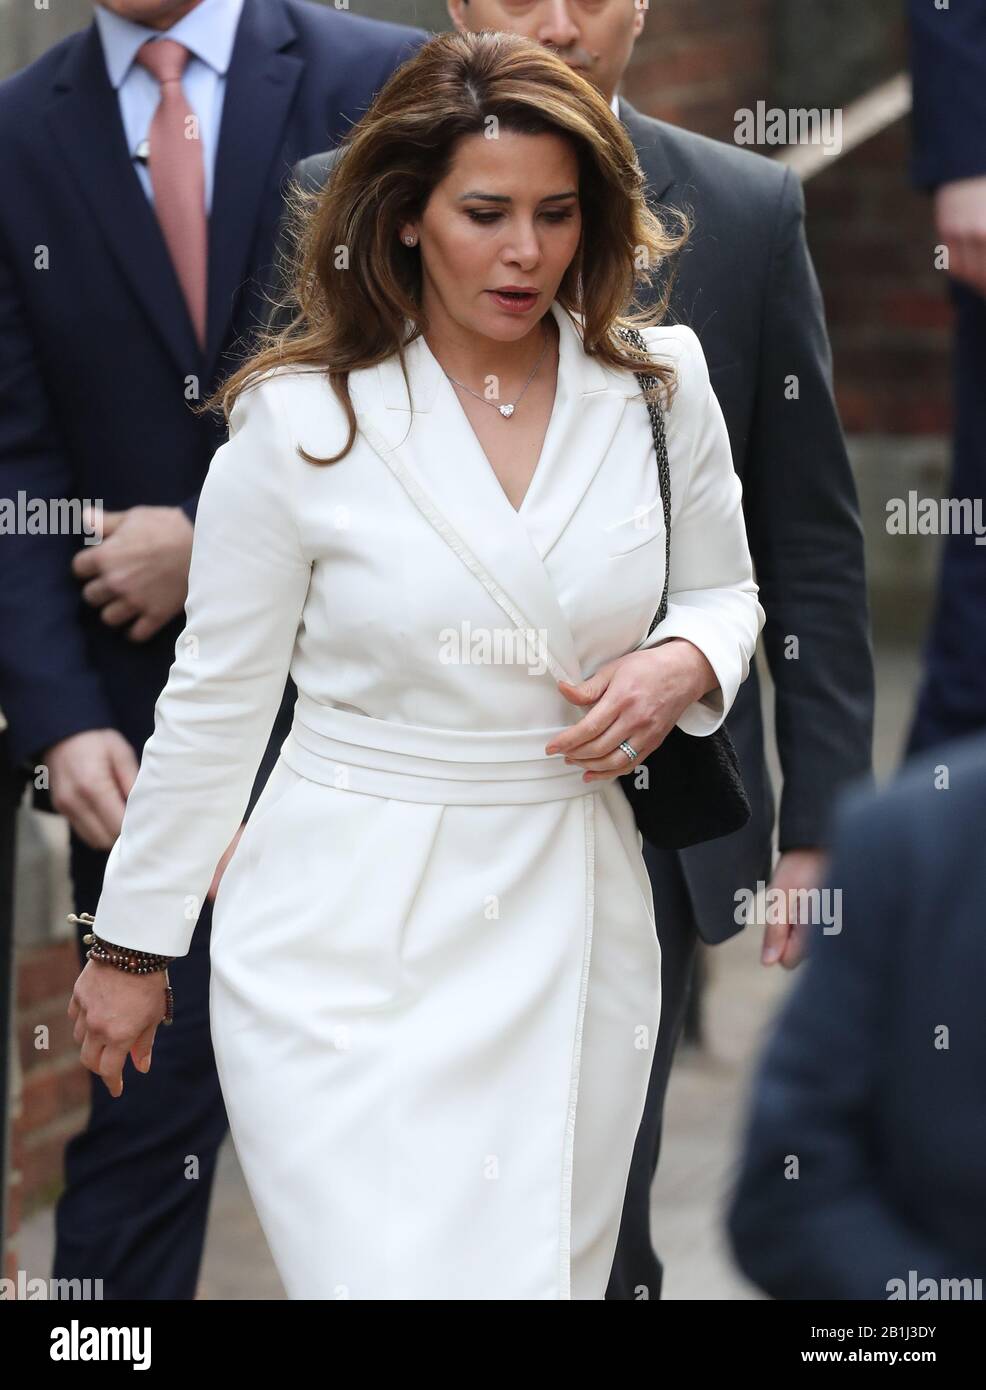 Prinzessin Haya Bint Al Hussein kommt am Eingang des Glockenhofes der Royal Courts of Justice in London an, um die letzte Anhörung in der Schlacht Am High Court zwischen dem Machthaber von Dubai und seiner entfremdeten Frau über ihre Kinder zu erhalten. Stockfoto